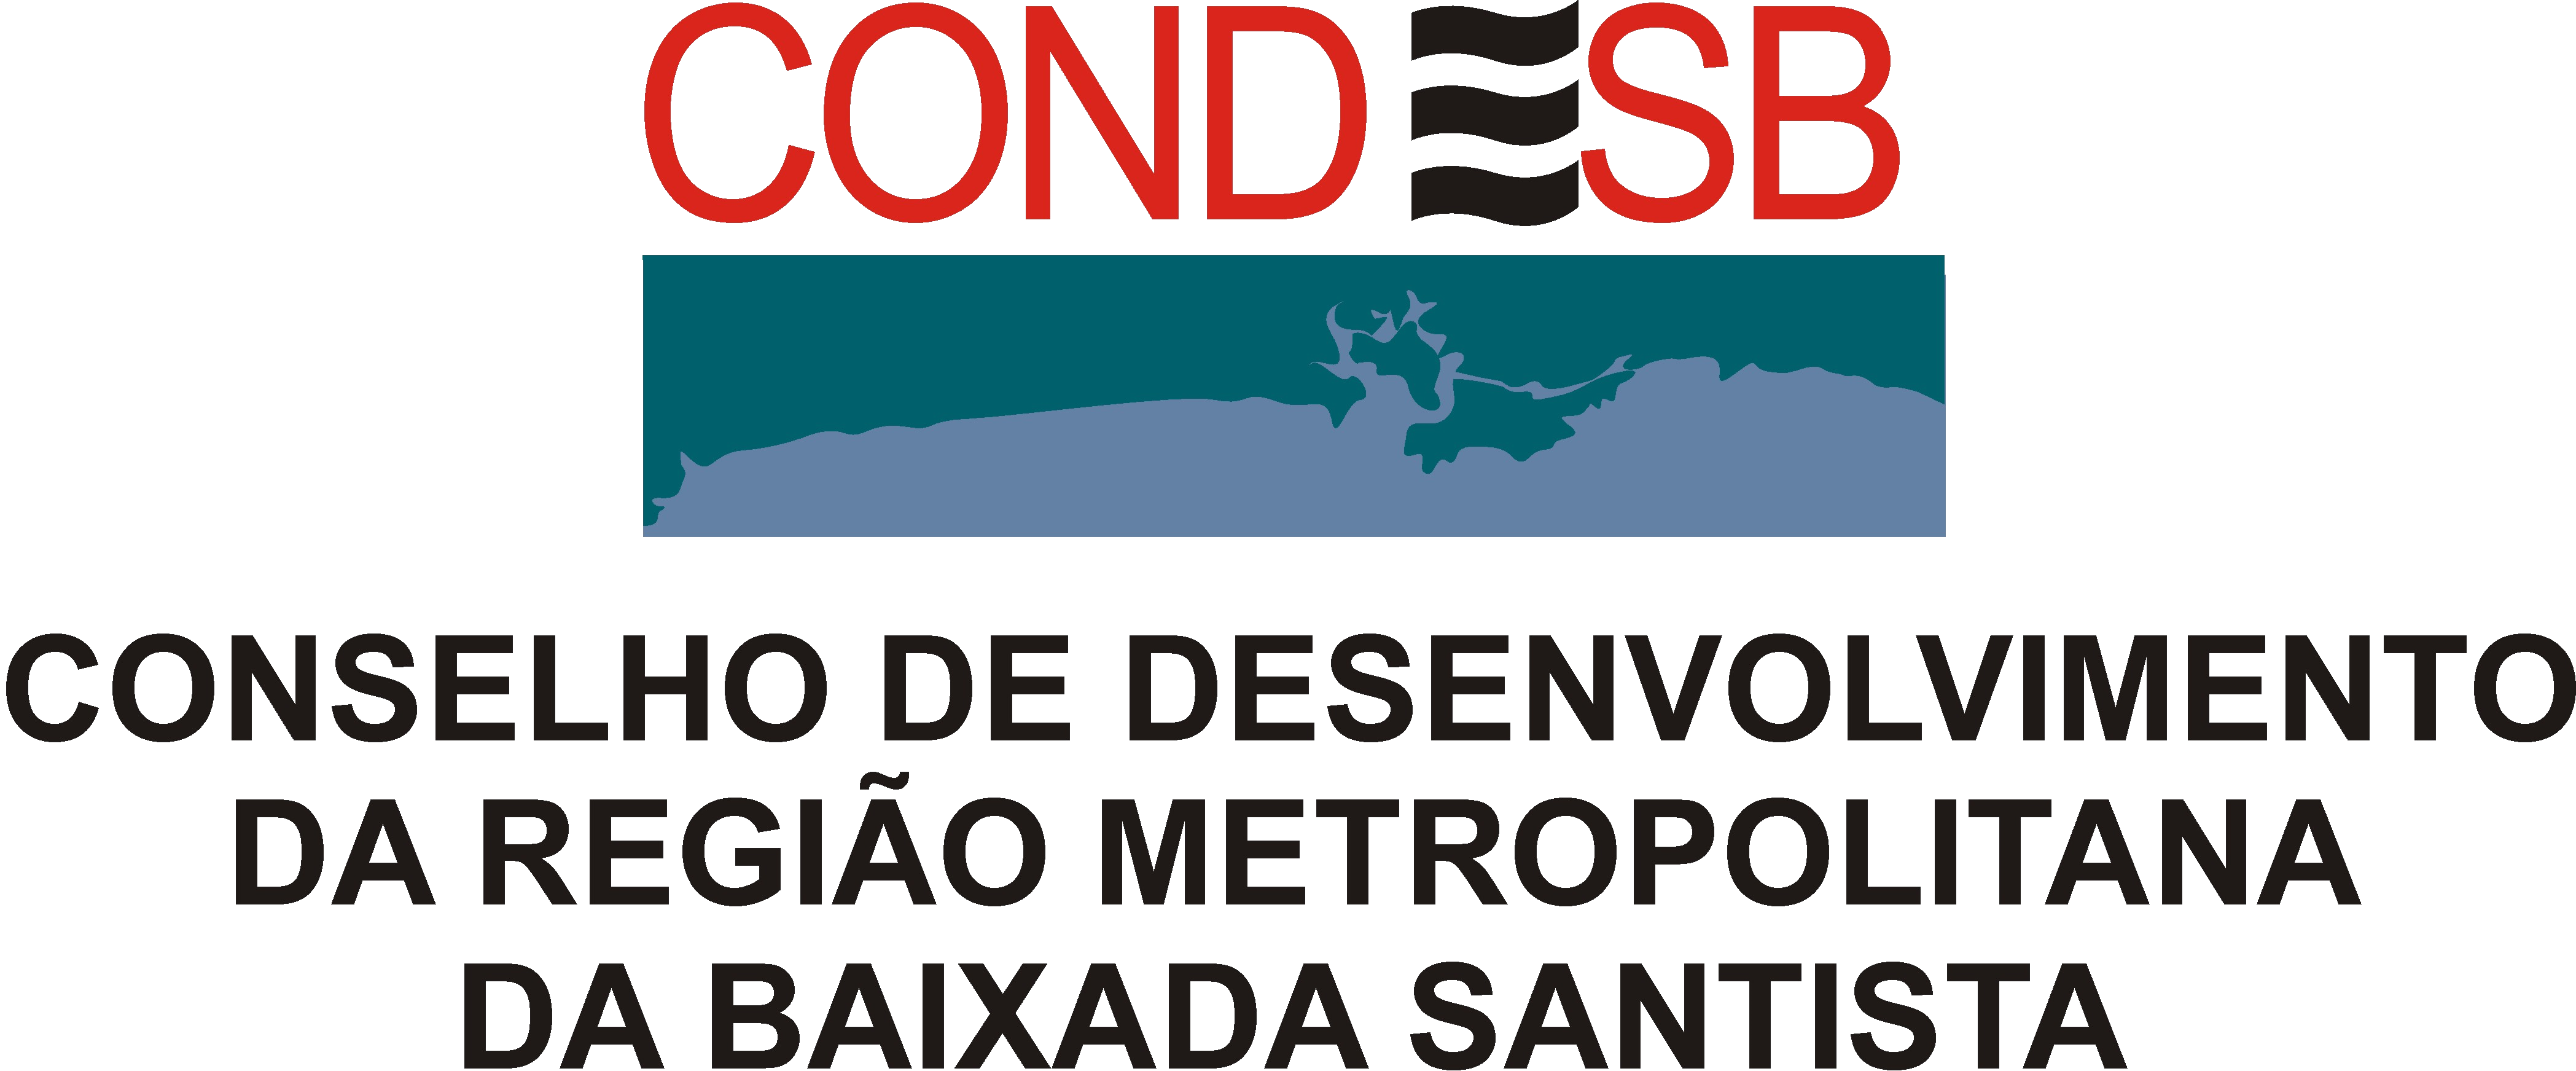 CONDESB - Conselho de Desenvolvimento da Baixada Santista